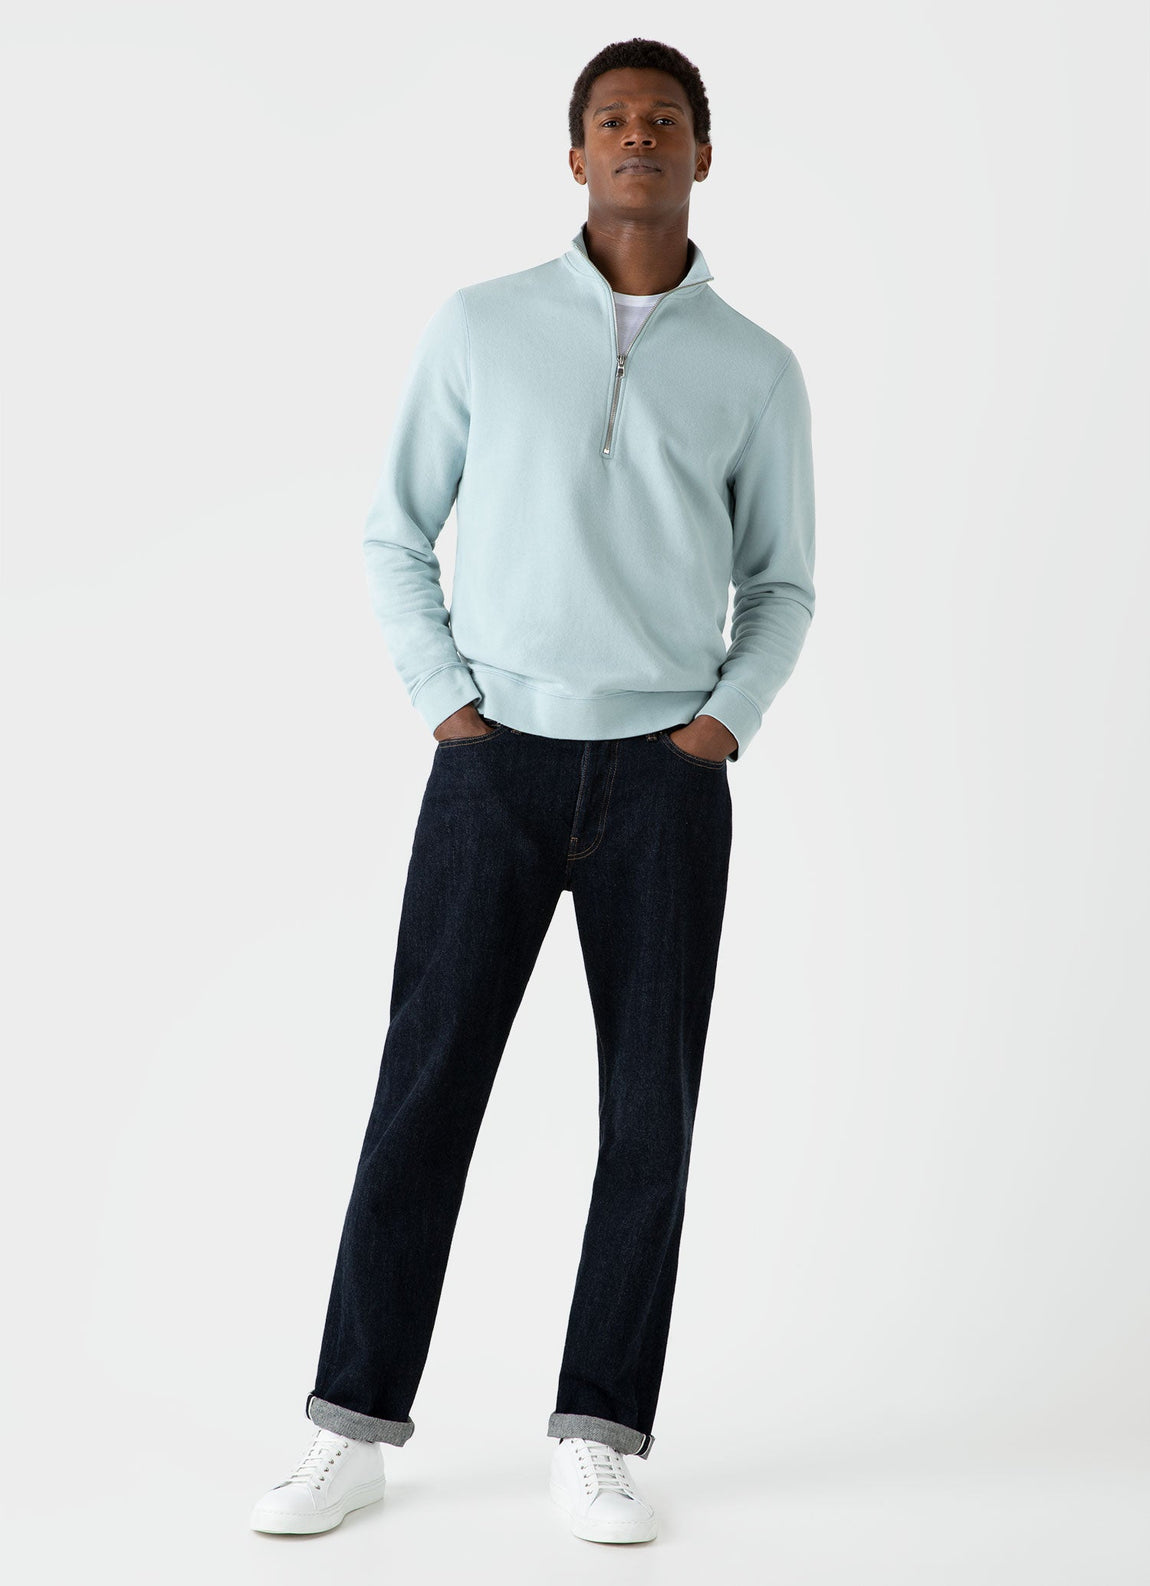 Men's Half Zip Loopback Sweatshirt in Blue Sage